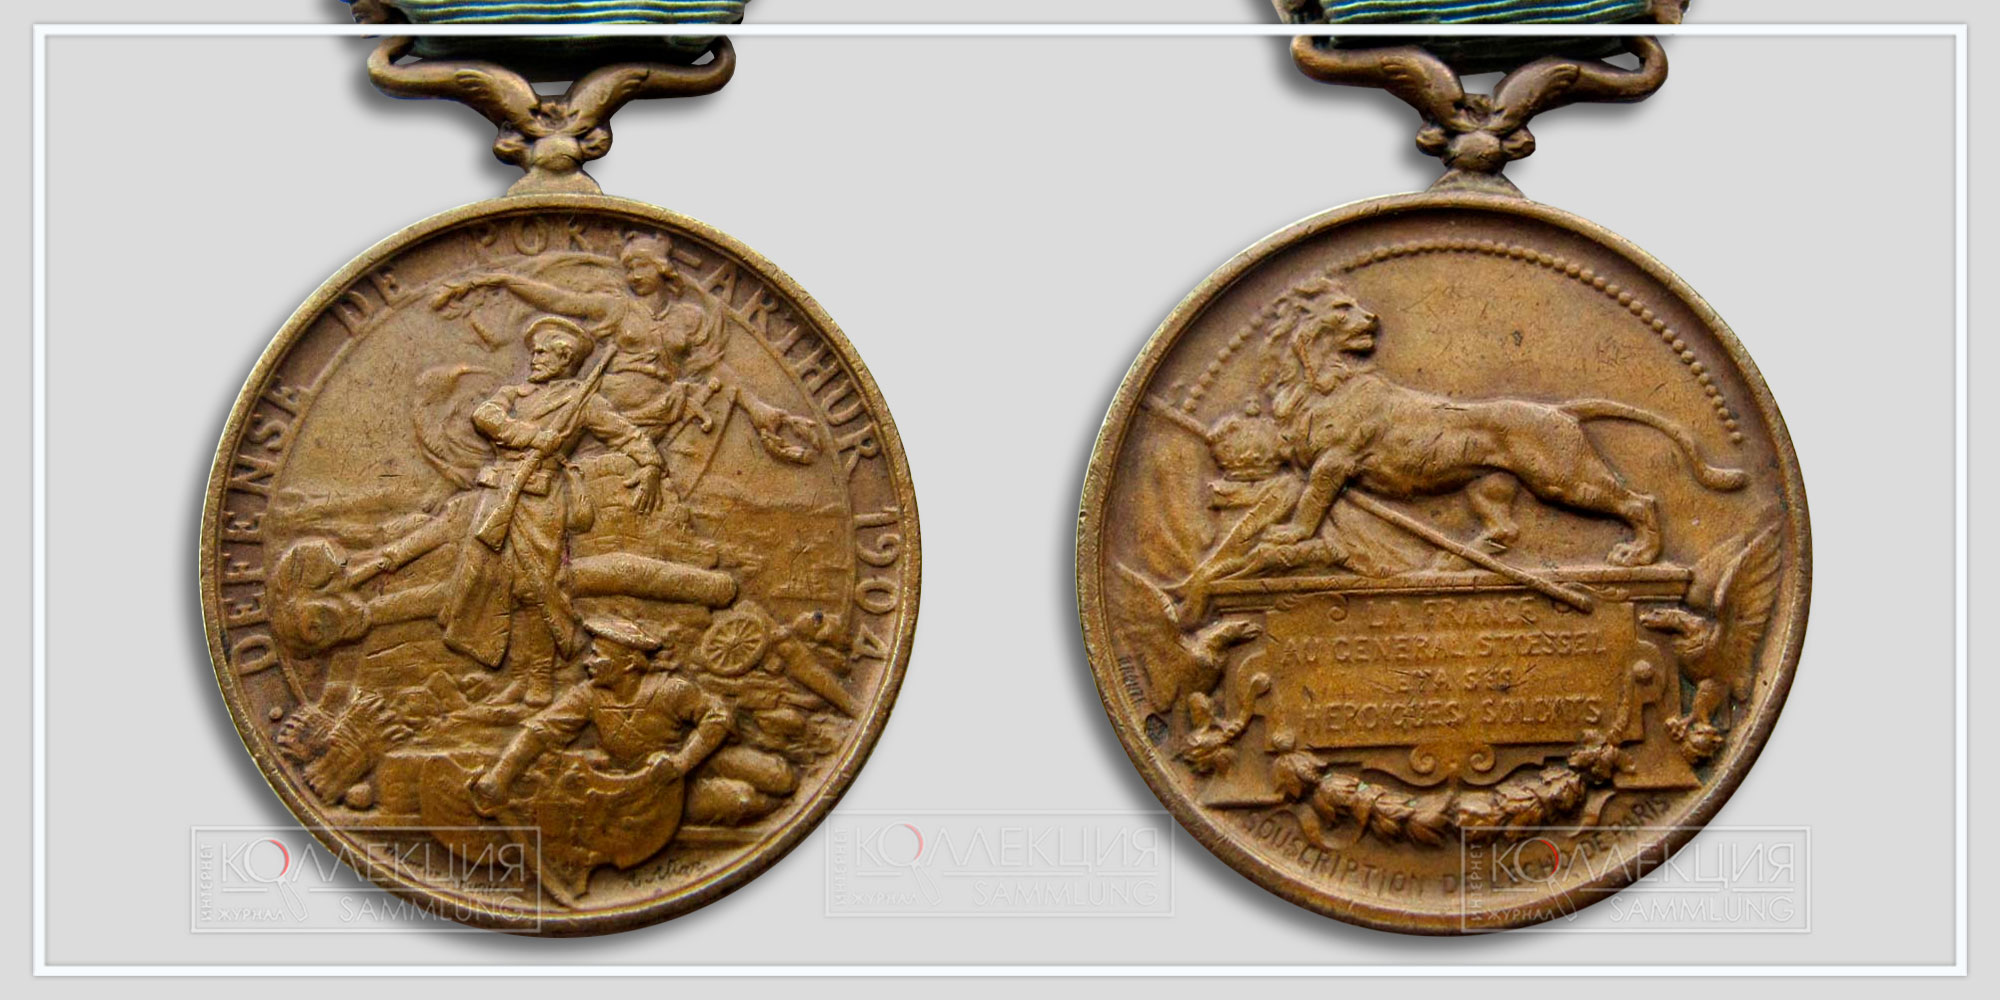 Медаль «Защитникам Порт-Артура» (Франция) Диаметр 32,0 мм. Вес 15,2 г (Медаль любезно предоставил Бабаев Виктор г. Кемерово)